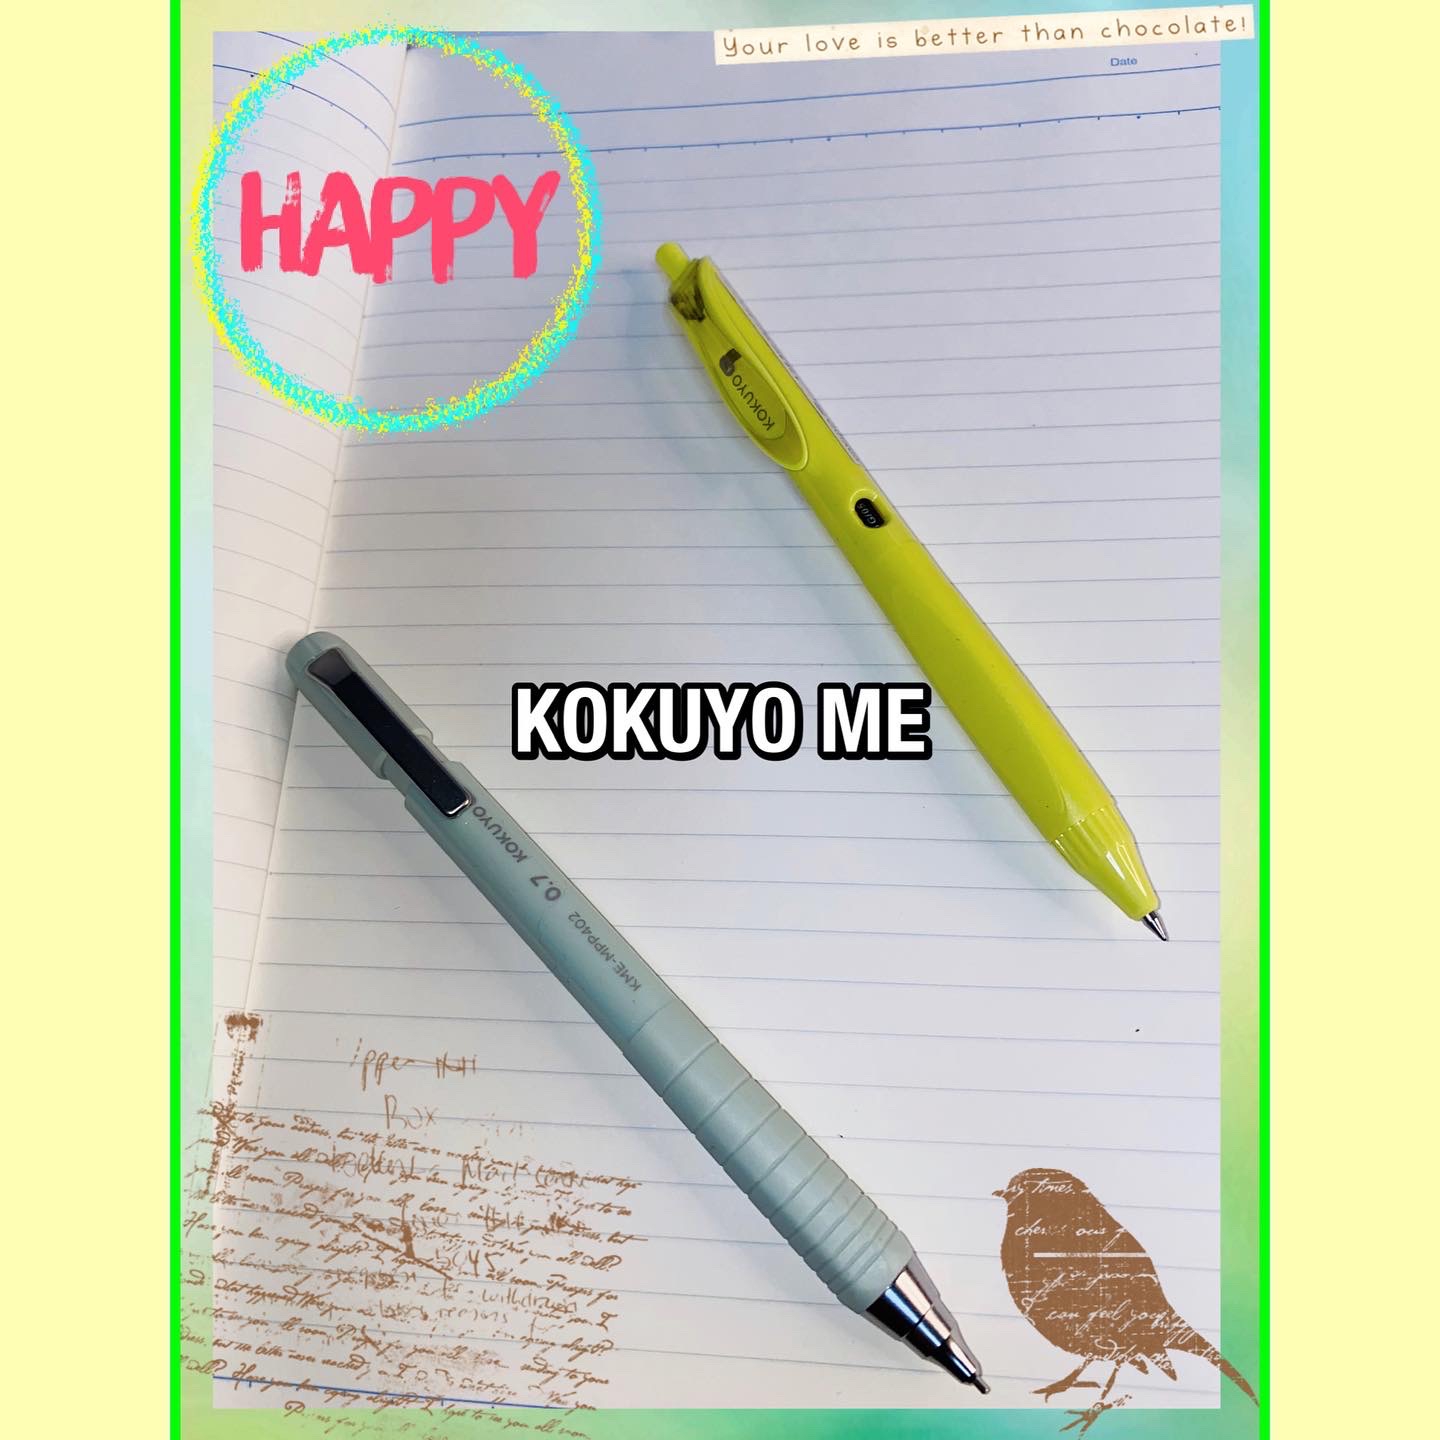 KOKUYO(コクヨ) ME ボールペンの良い点・メリットに関するマイピコブーさんの口コミ画像2